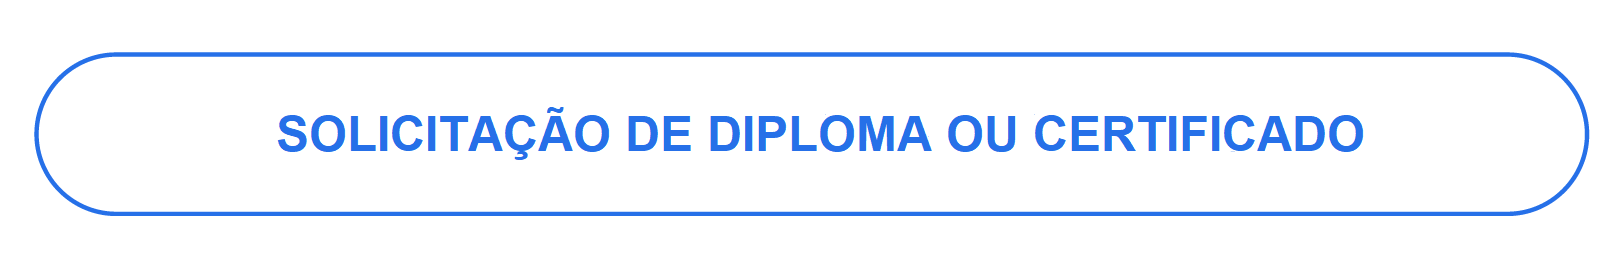 Botão Solicita Diploma